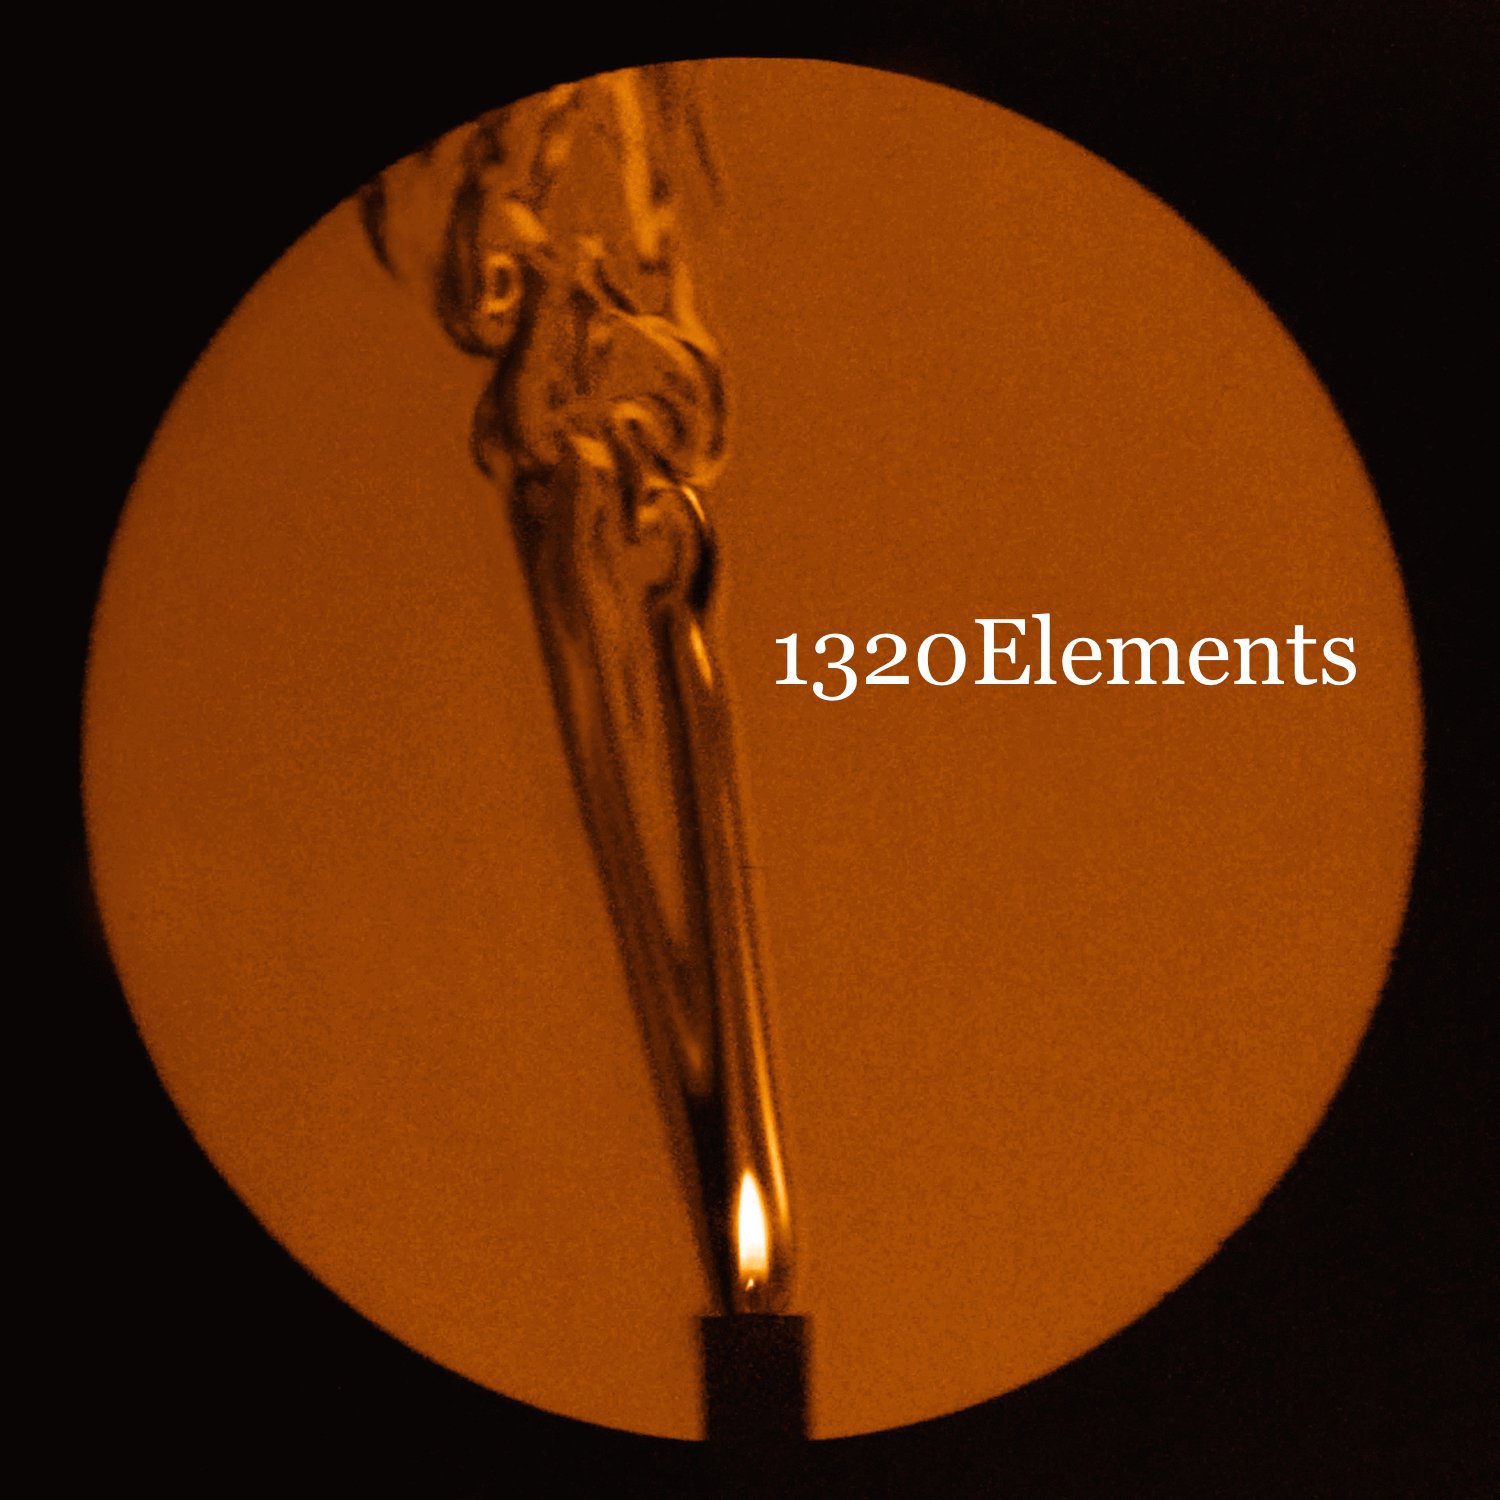 elements logo 1 copy - 1320 Elements.jpg